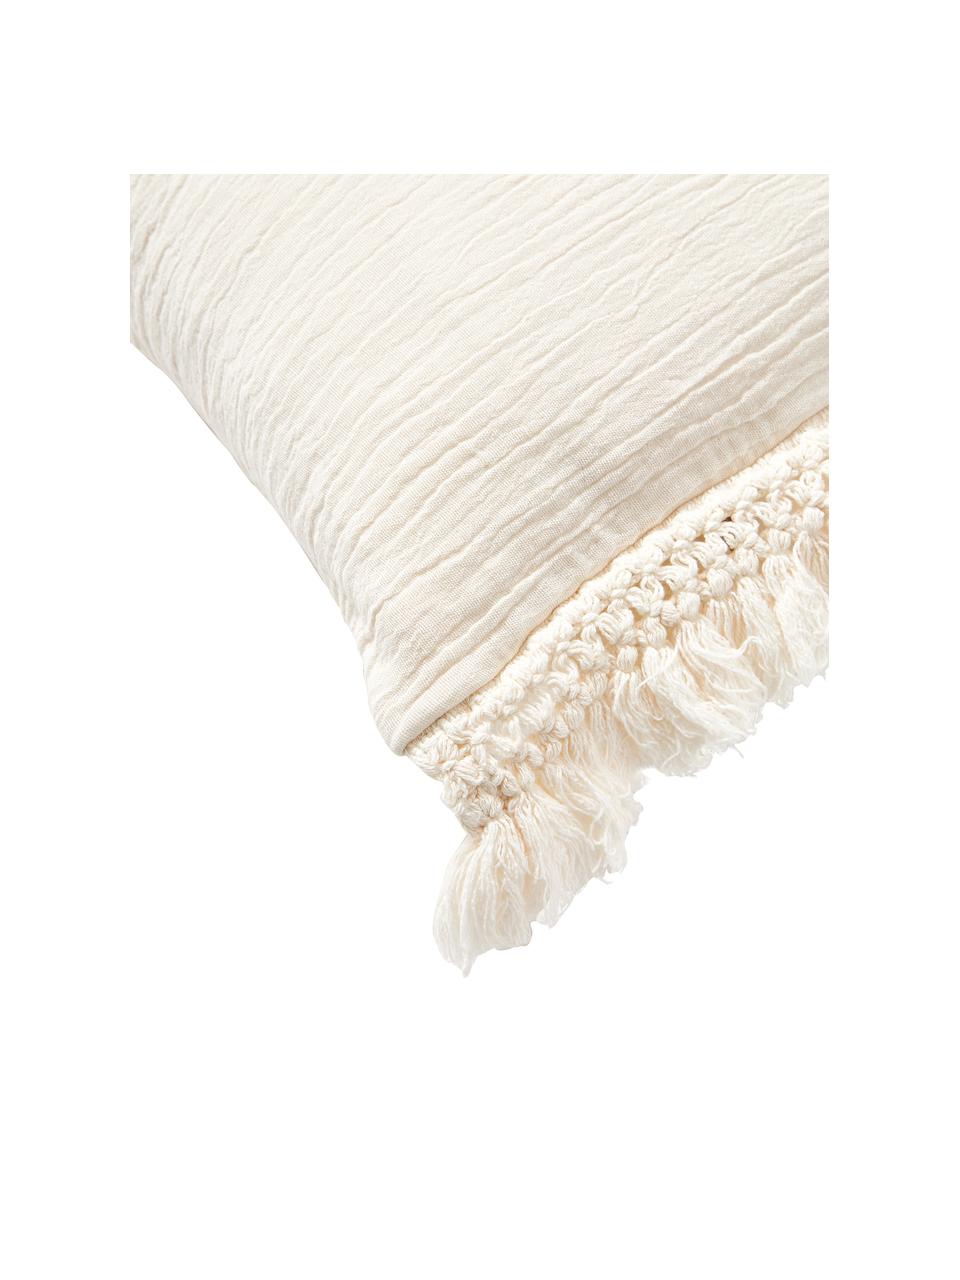 Baumwoll-Kissenhülle Piera mit Fransen, 100 % Baumwolle, Cremeweiß, B 45 x L 45 cm